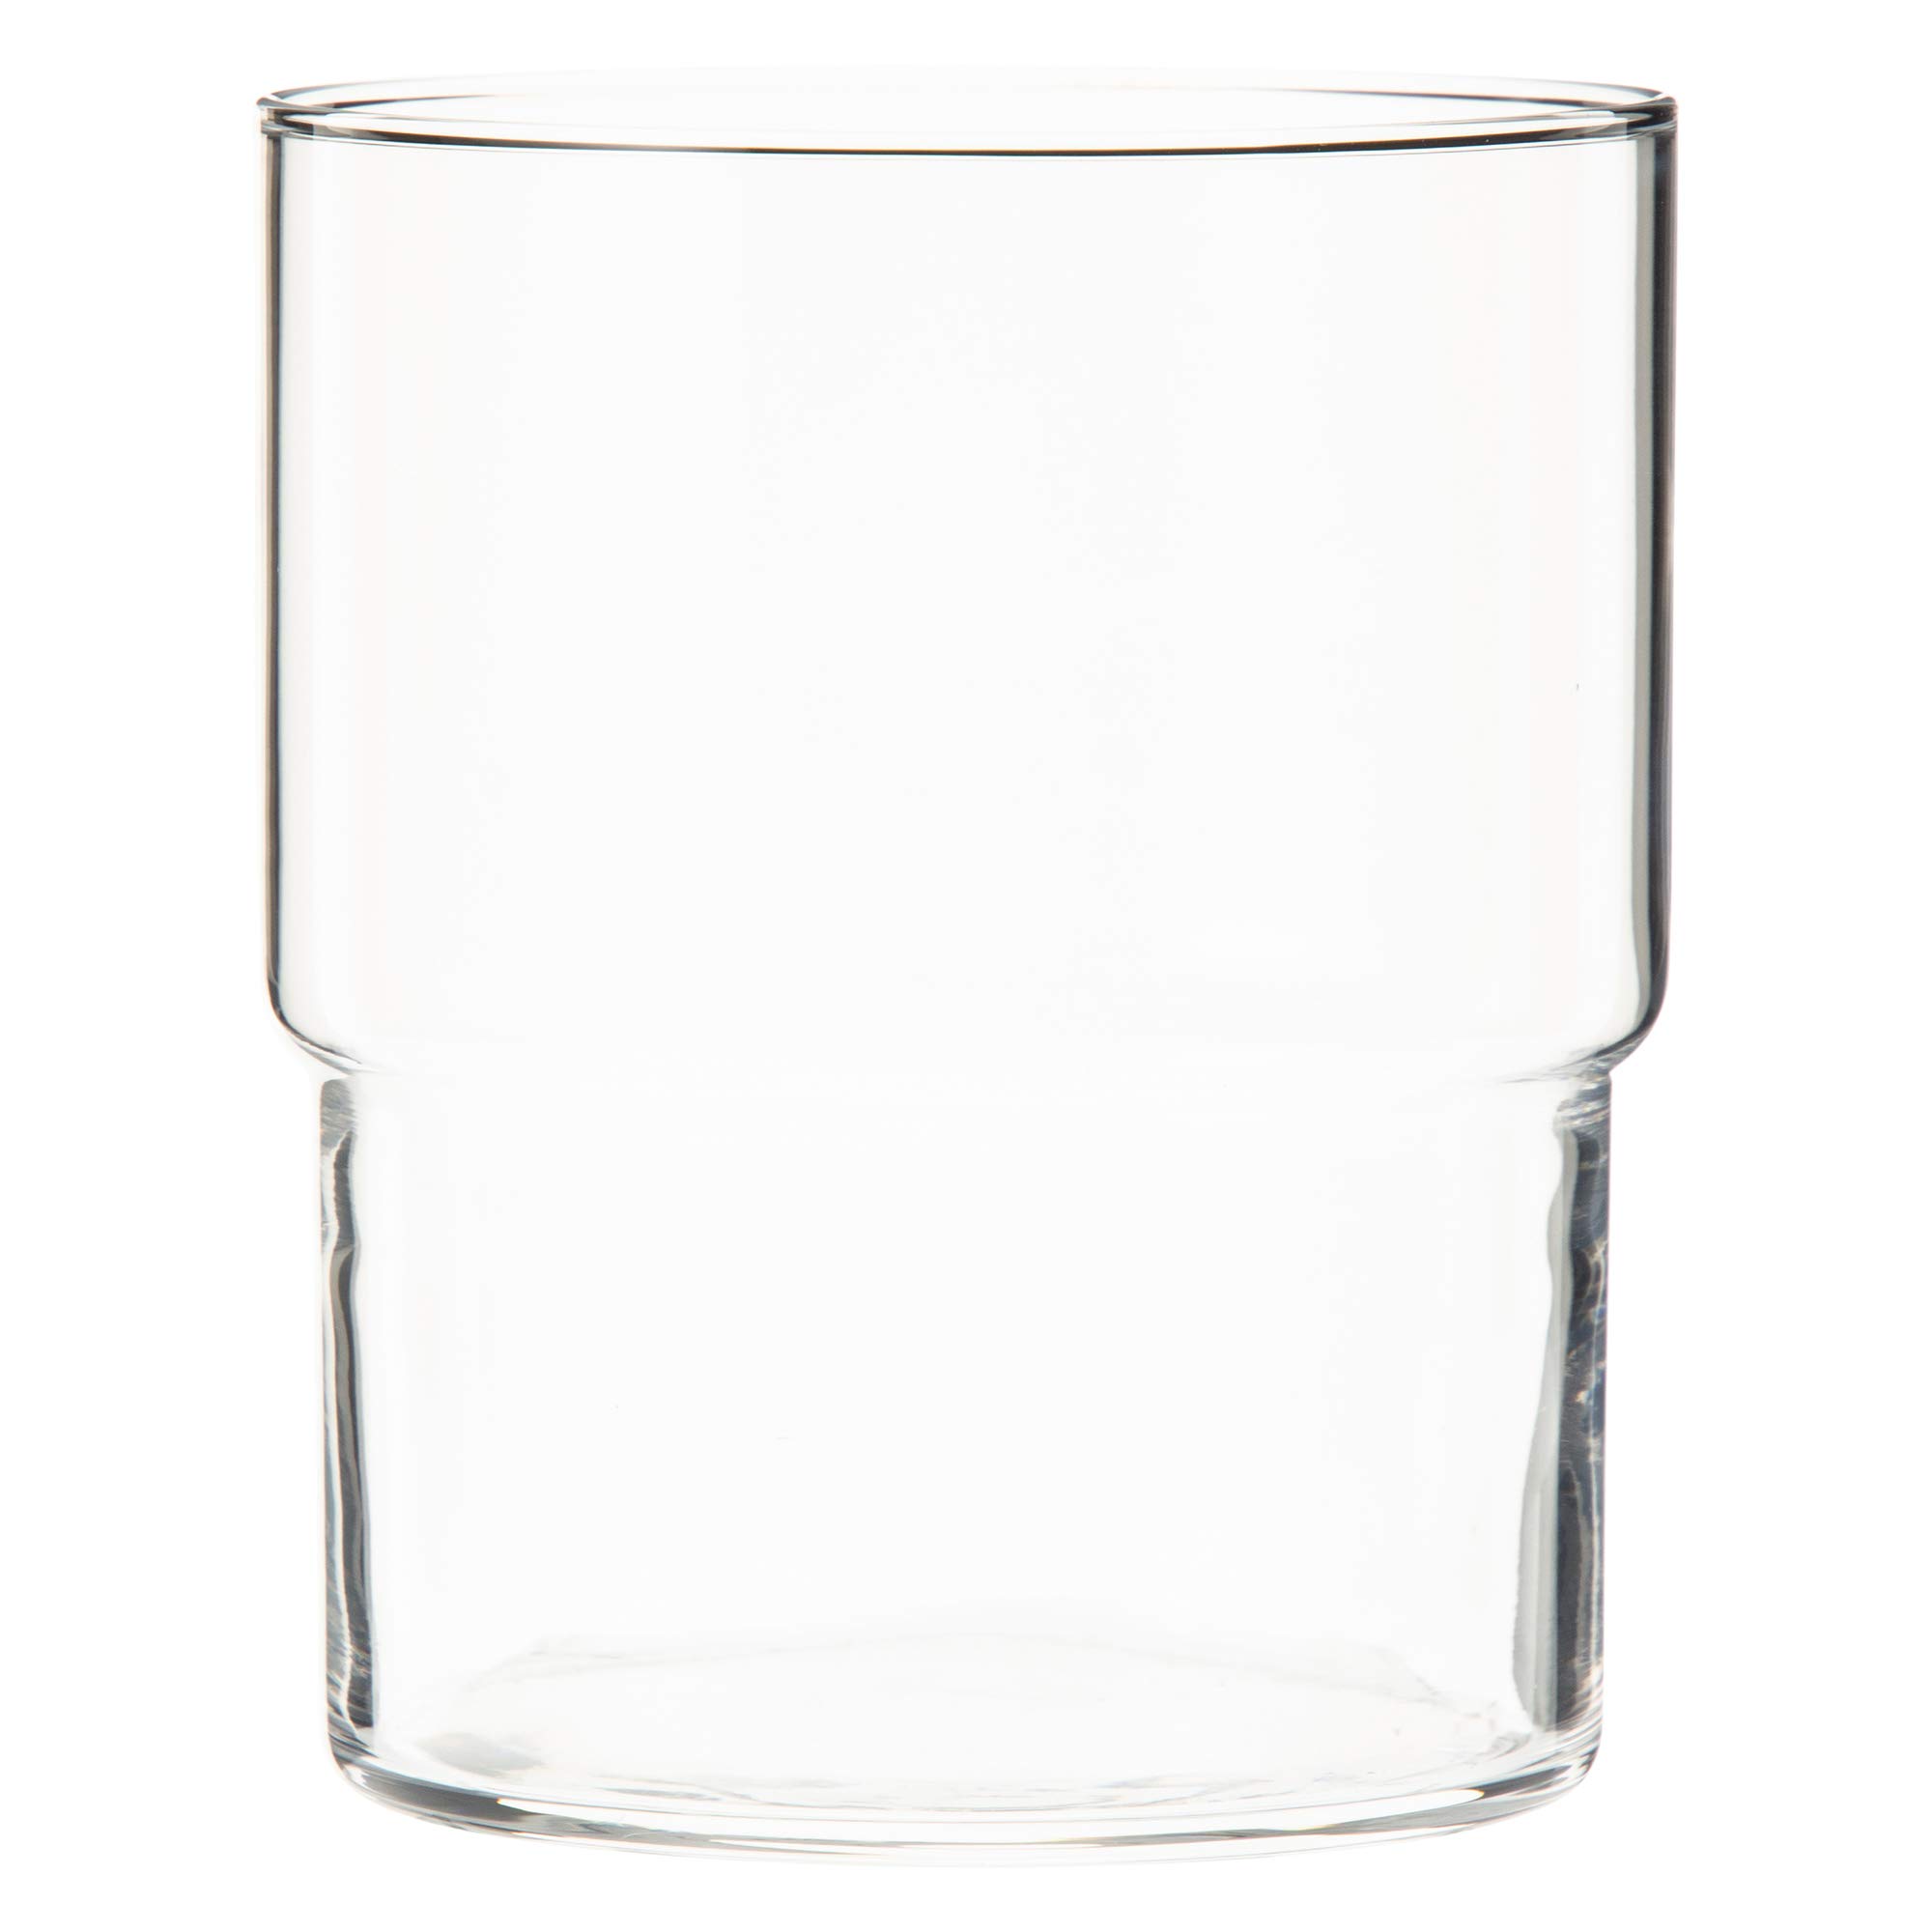 東洋佐々木ガラス Toyo Sasaki Glass Tumbler, Fino, Dishwasher Safe, Made in Japan, 13.8 fl oz (390 ml), Set of 48 (Sold by Case) B-21126CS